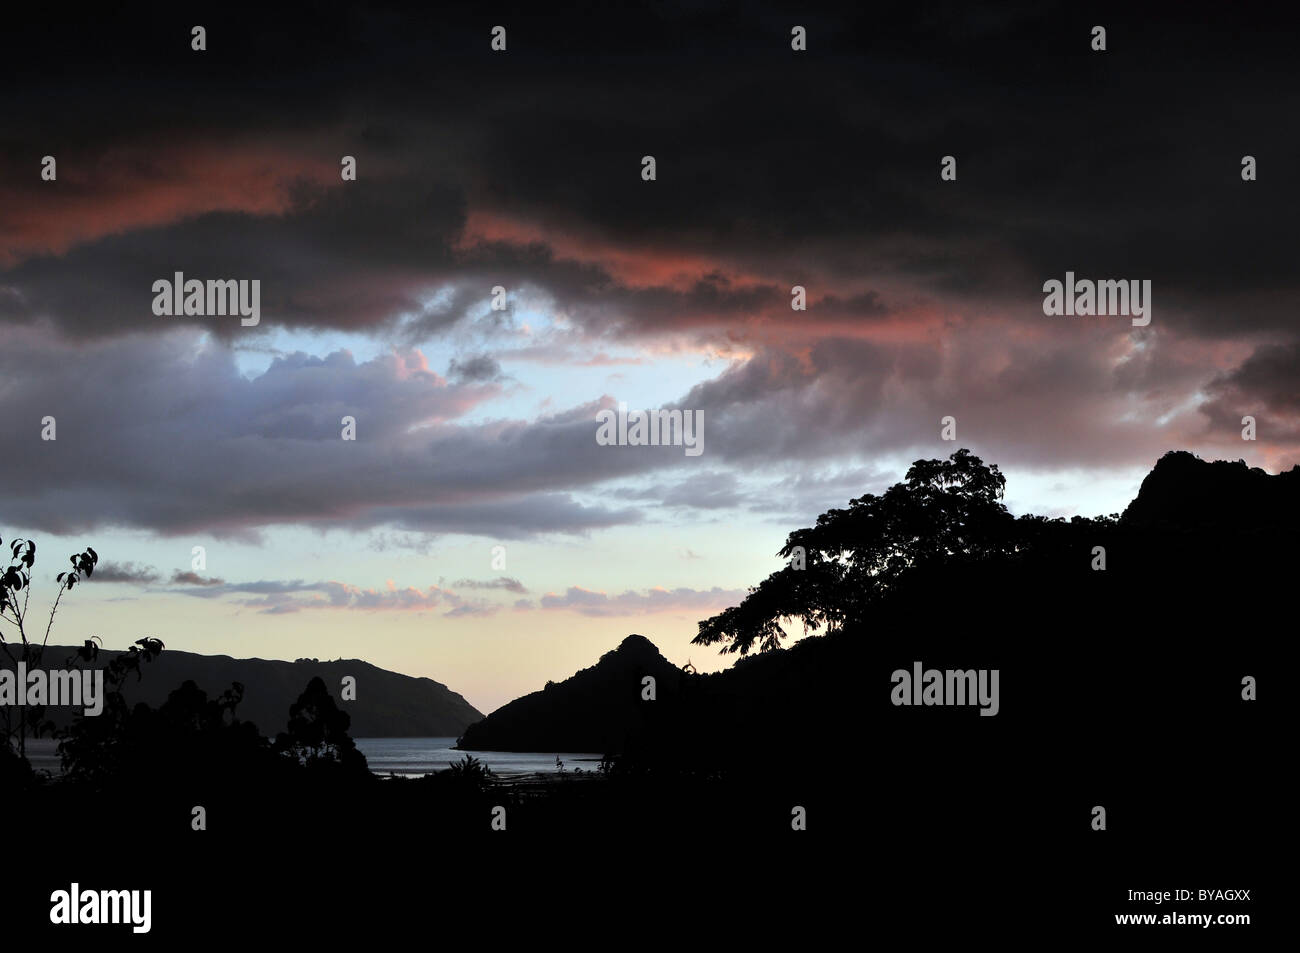 Dramatic evening sky over Huia Bay, Waitakere Ranges region, New Zealand Stock Photo